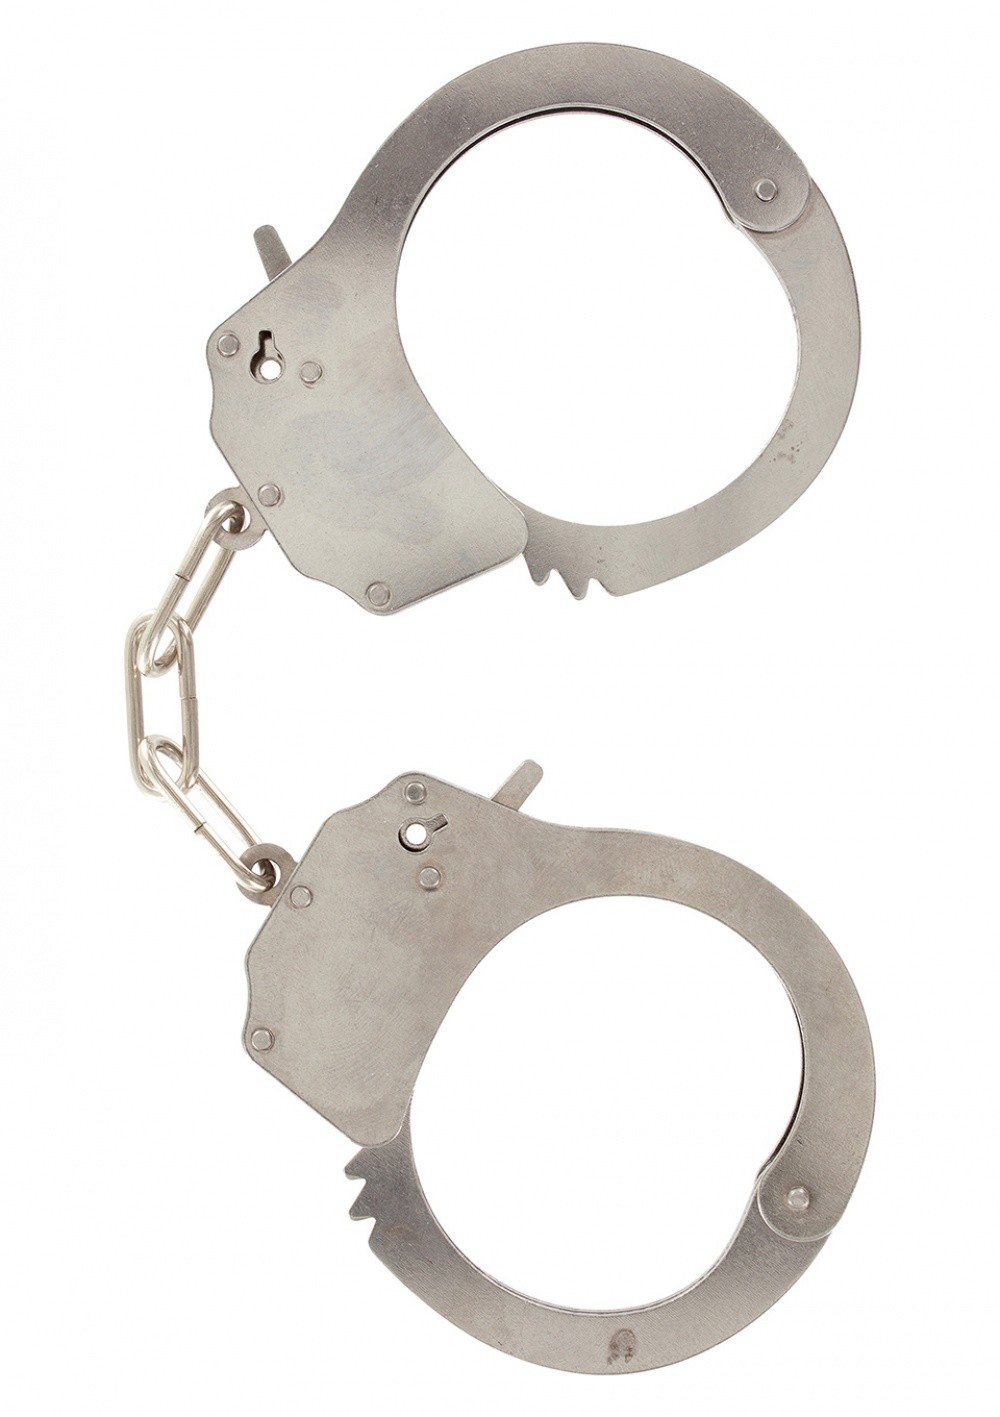 Menottes poignets en métal Metal Handcuffs